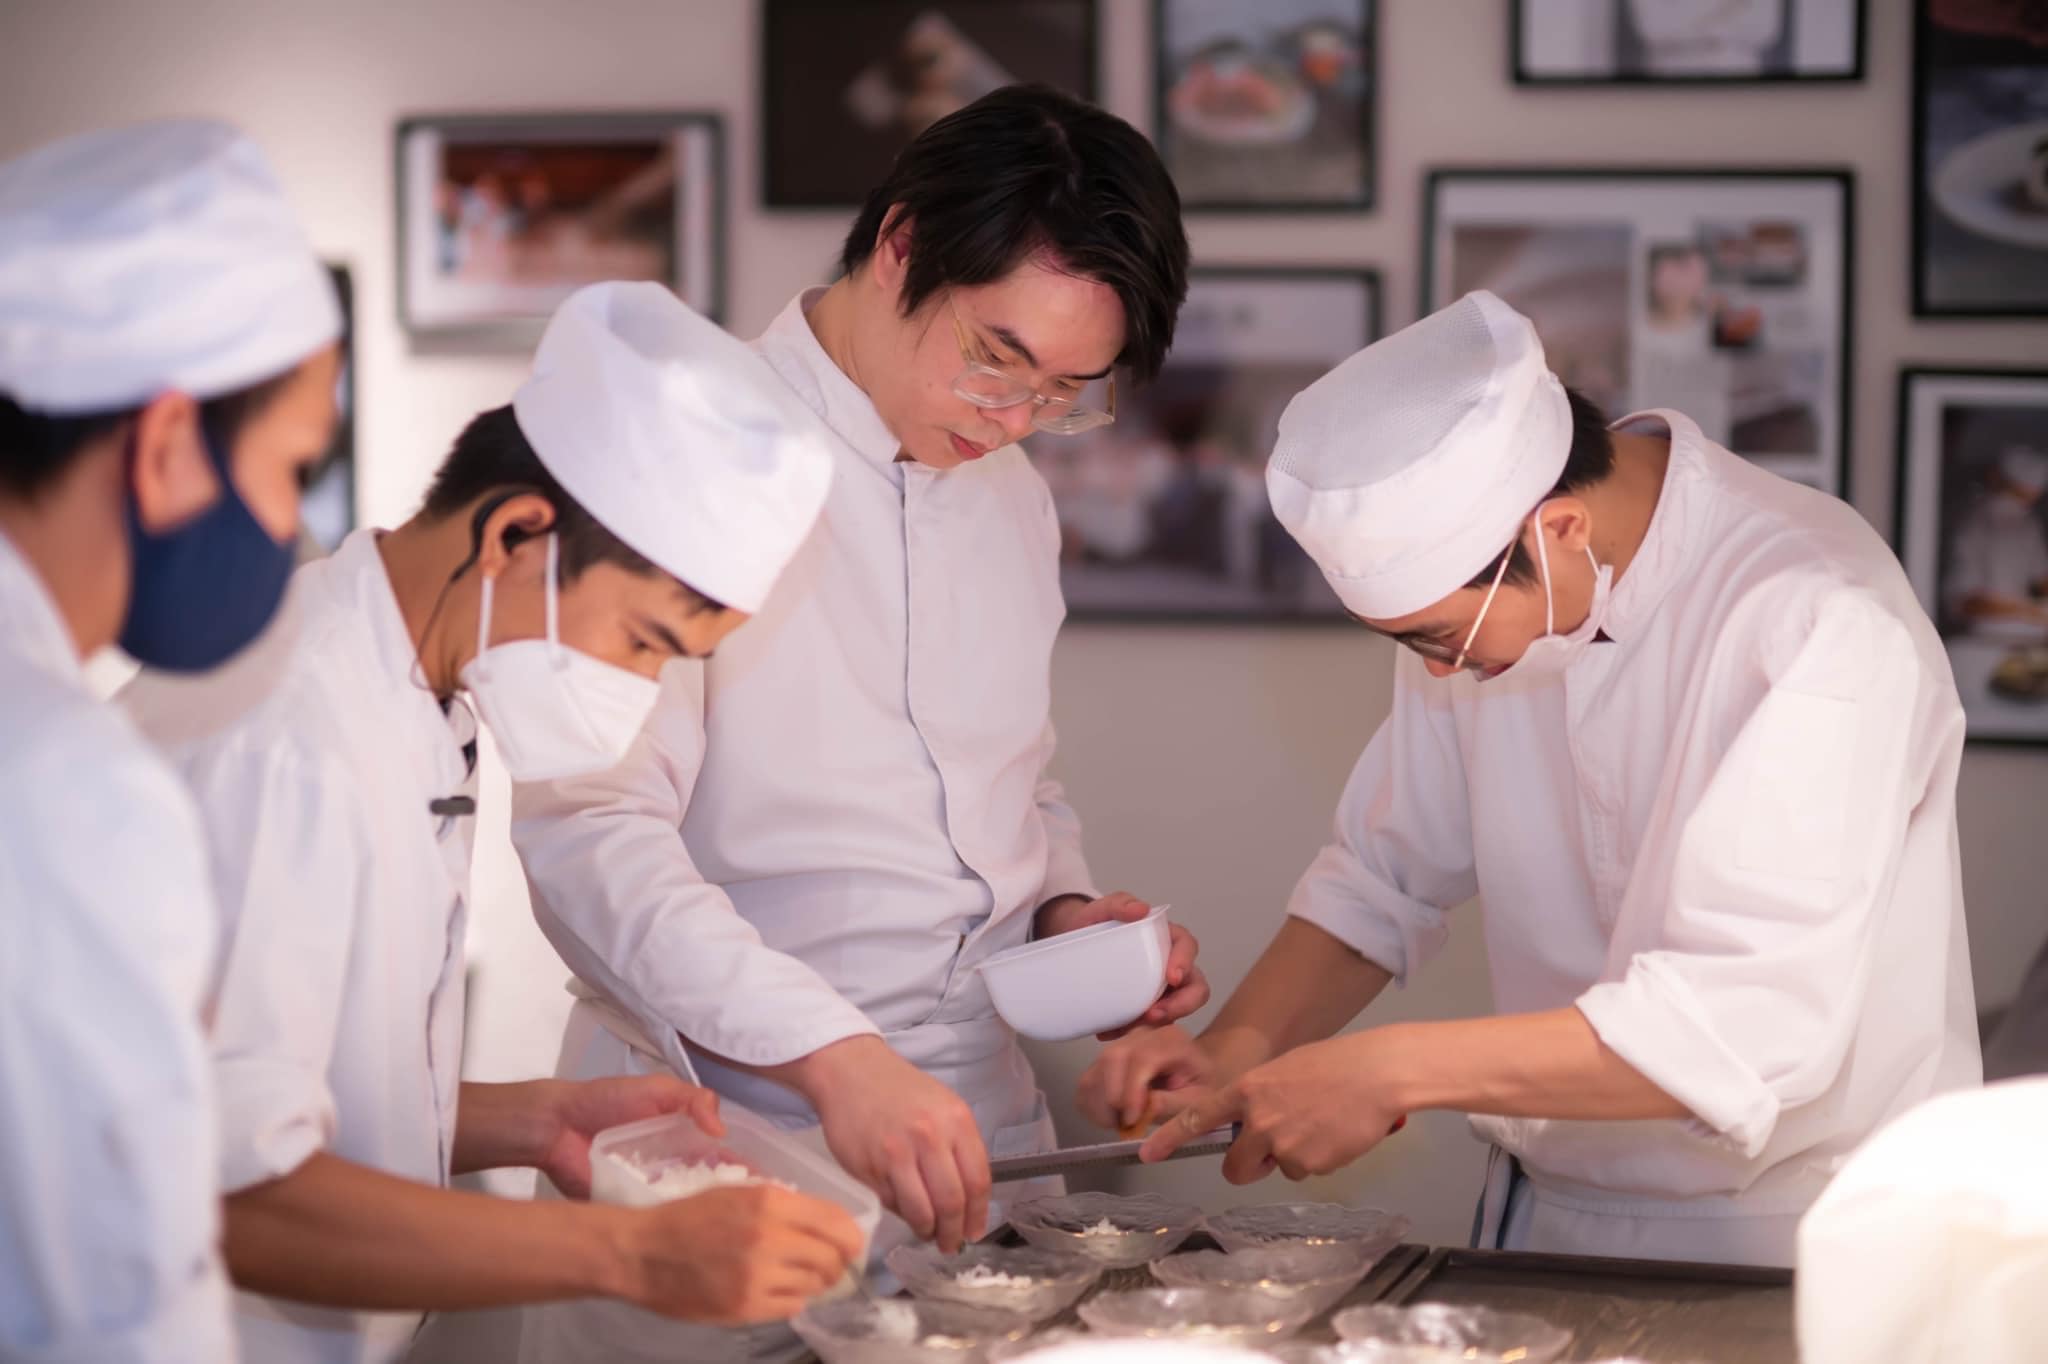 Chef Hoàng Tùng and his team